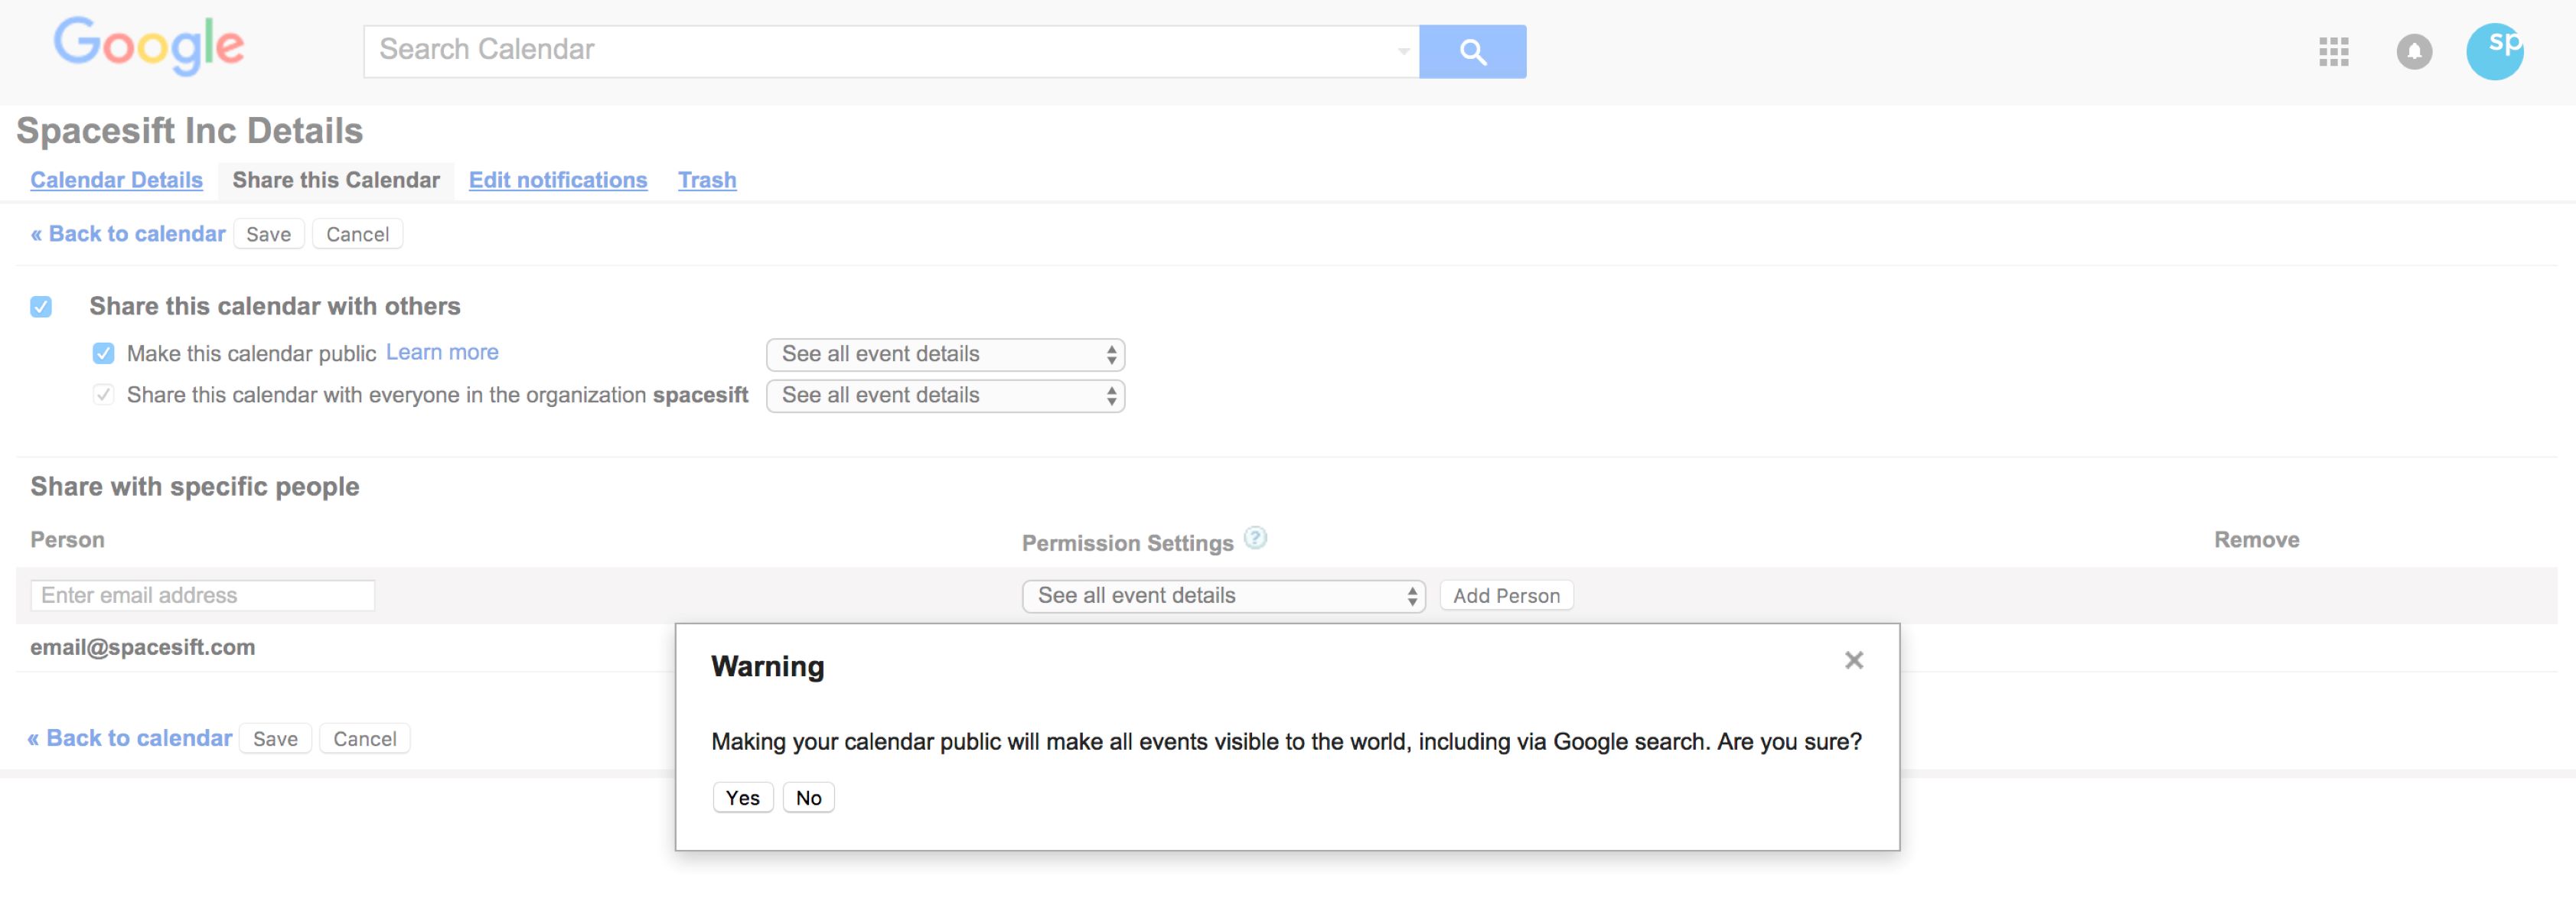 How To Make Your Google Calendar Public